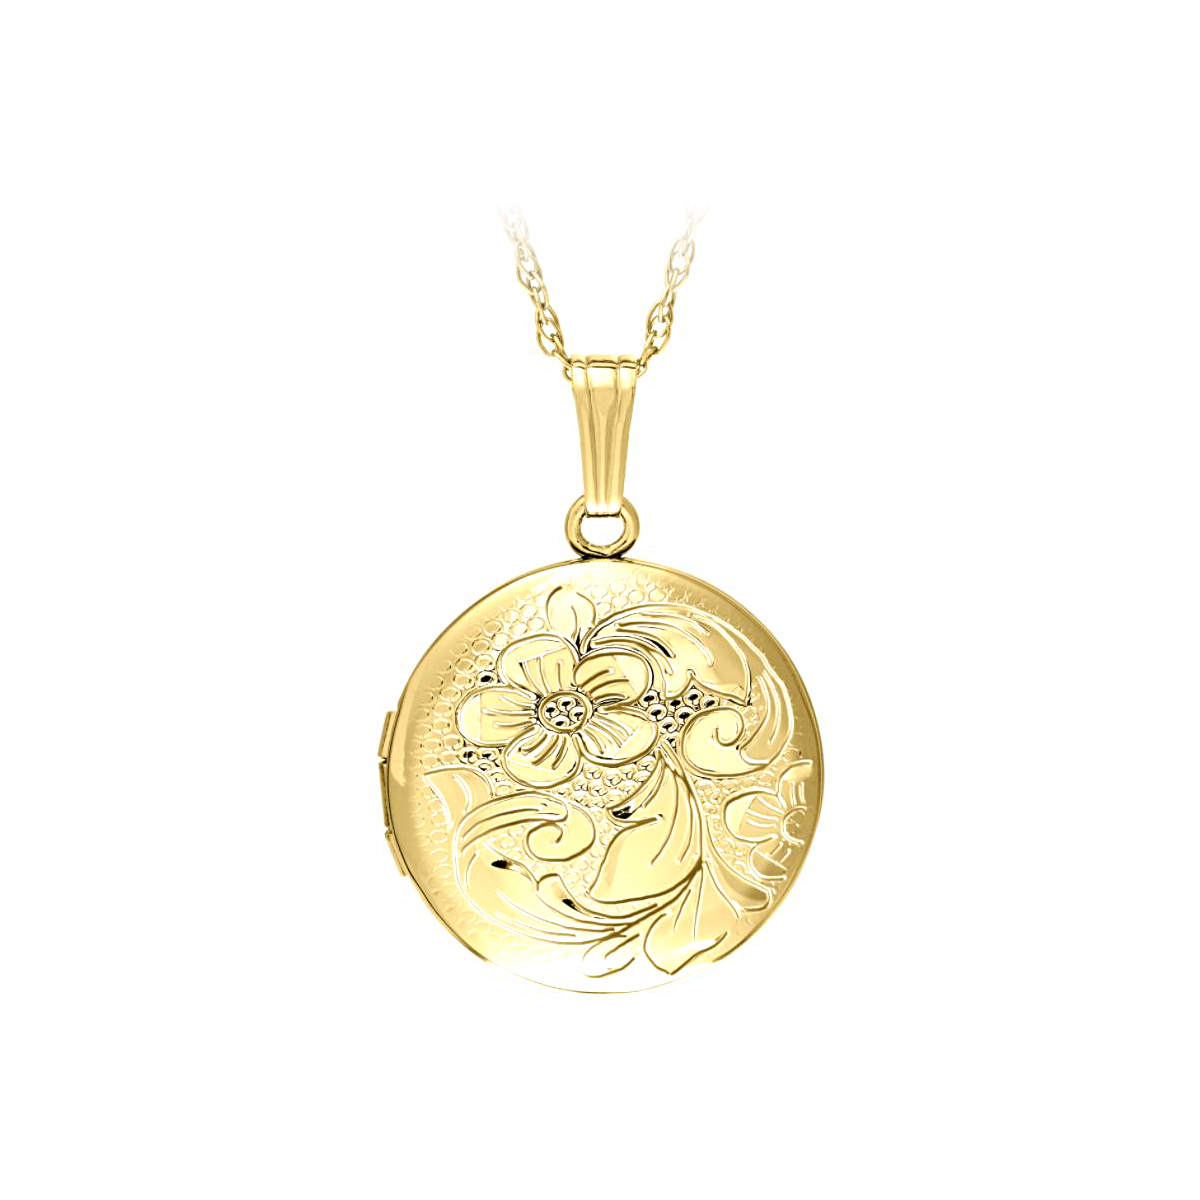 14 Karat Yellow Gold Filled Engraved Floral Round Locket